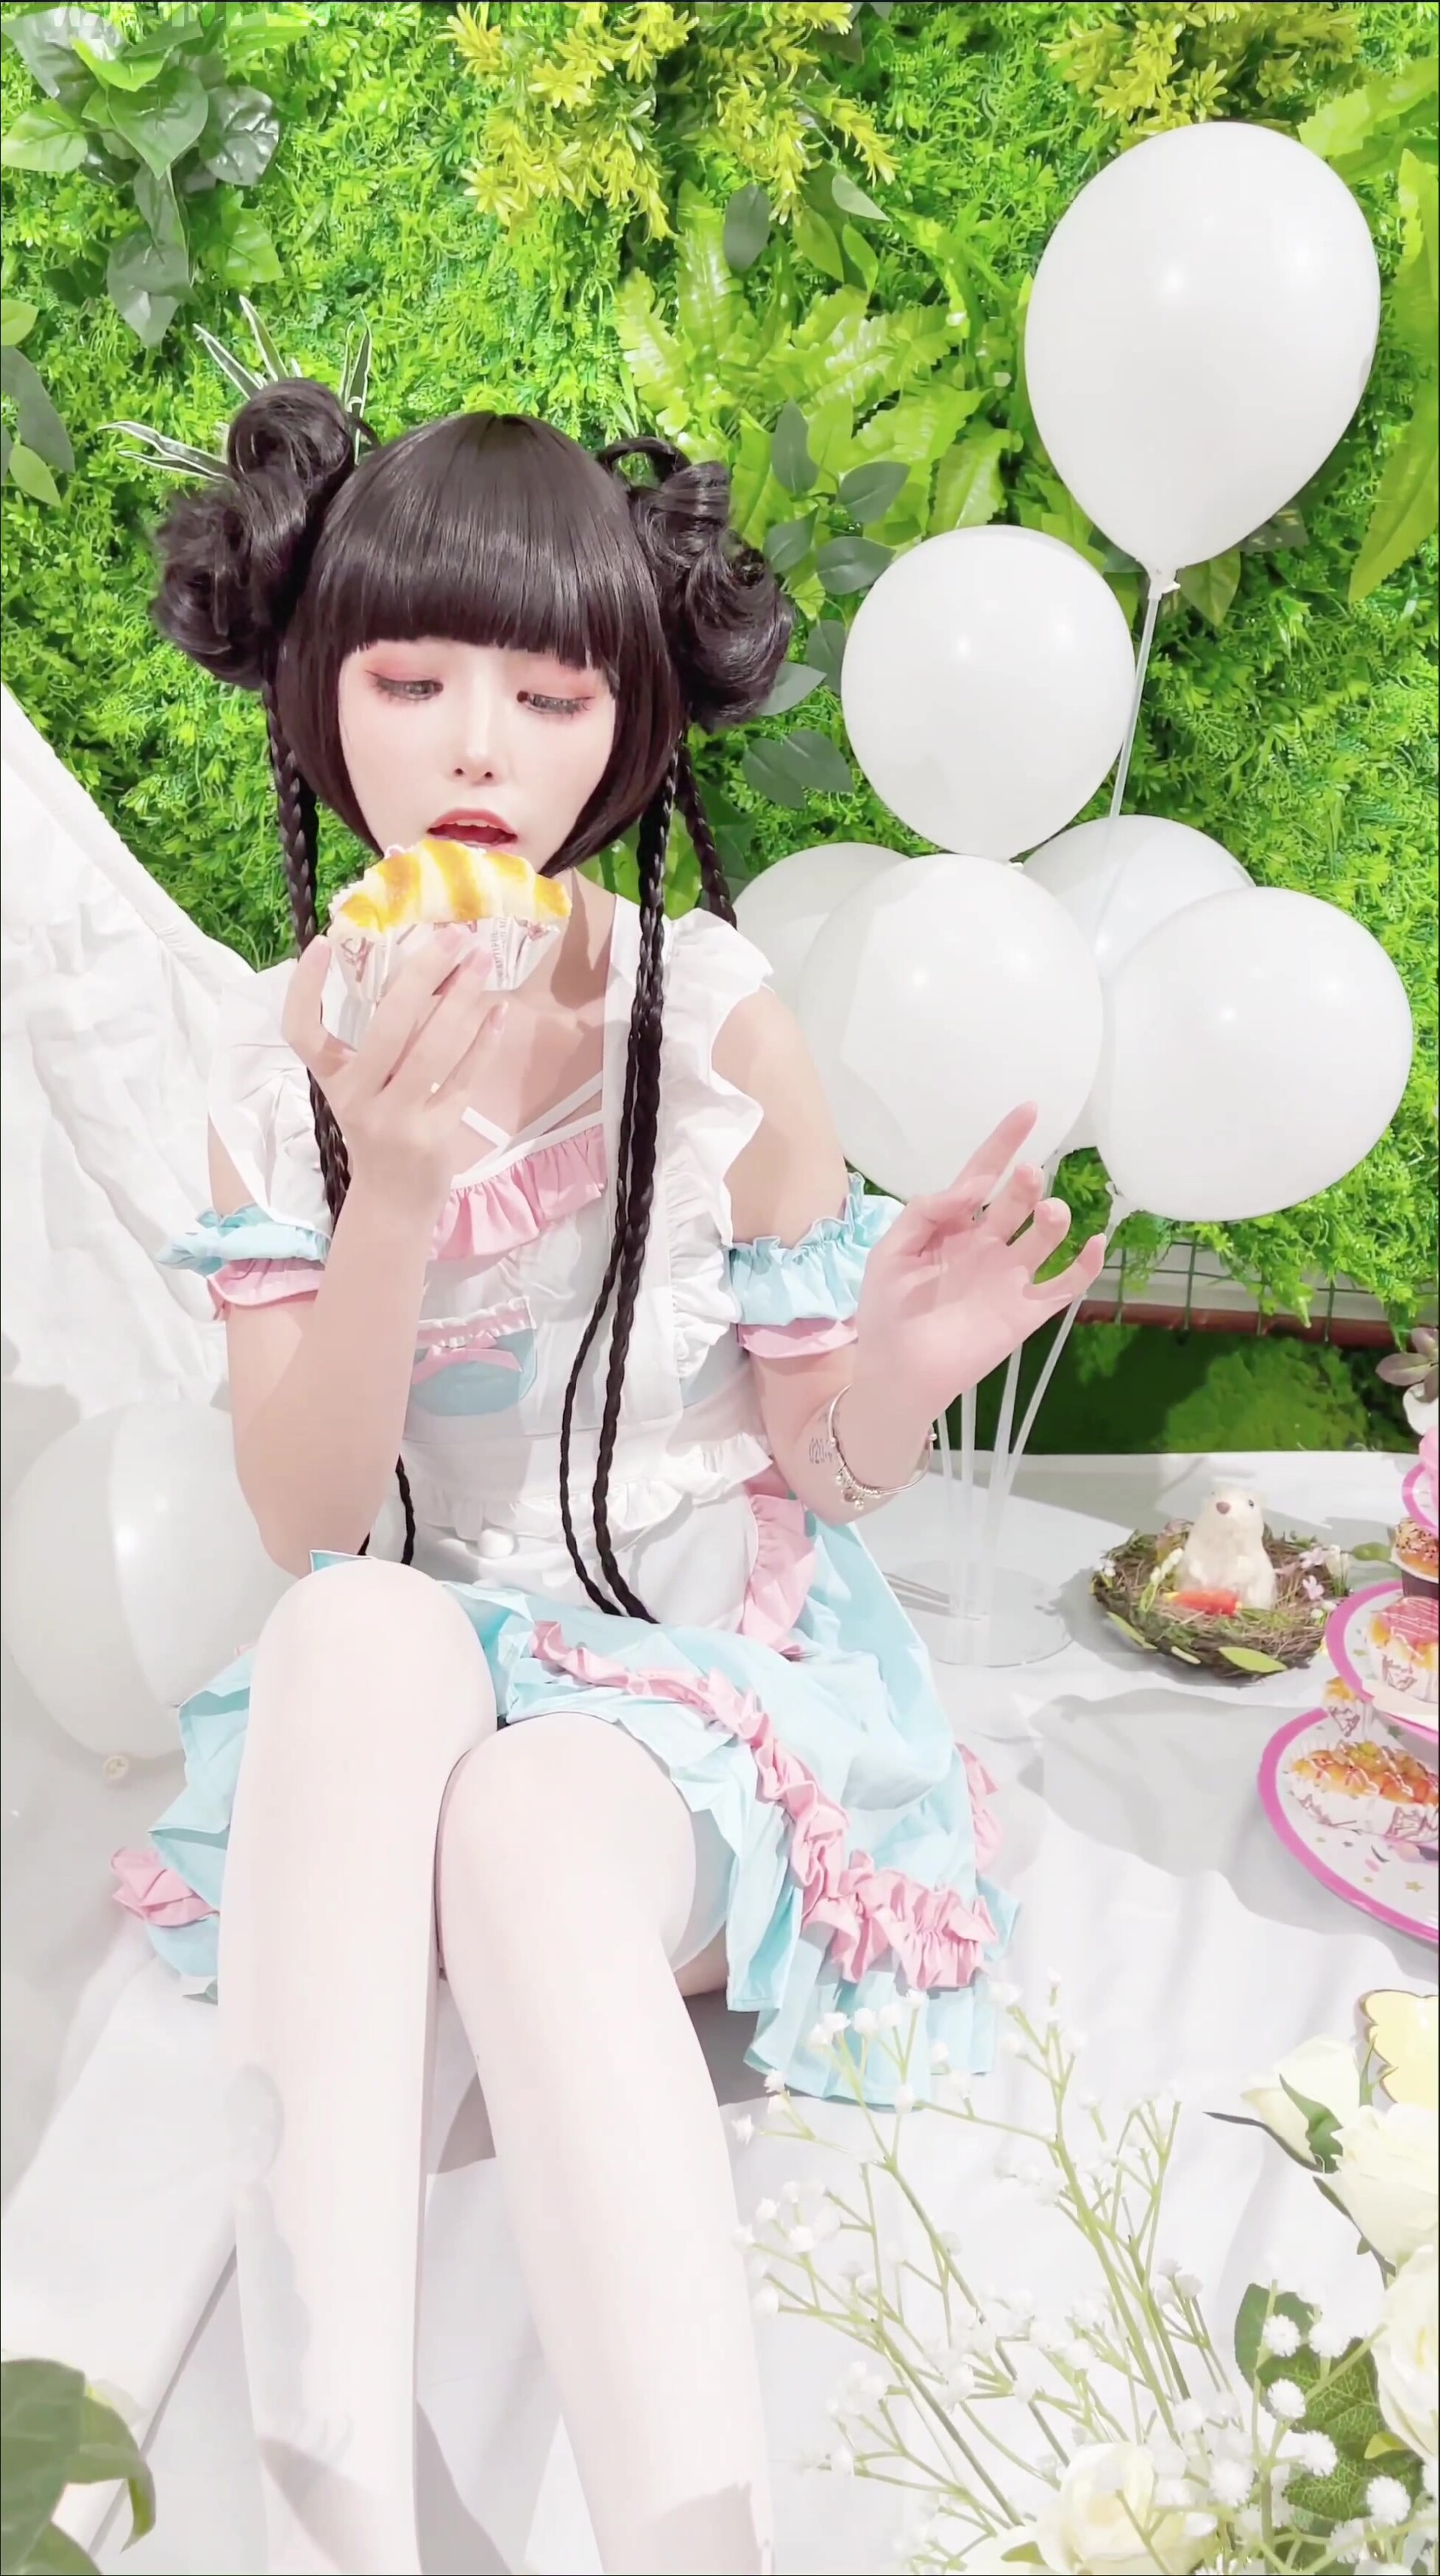 최고의 코스 폭발 기계 소녀 『야옹 요시』의 연초 신작 "요시의 행복한 피크닉"야외 탐닉 맛있는 꿀 구멍 울트라 HD 4K 오리지널 버전